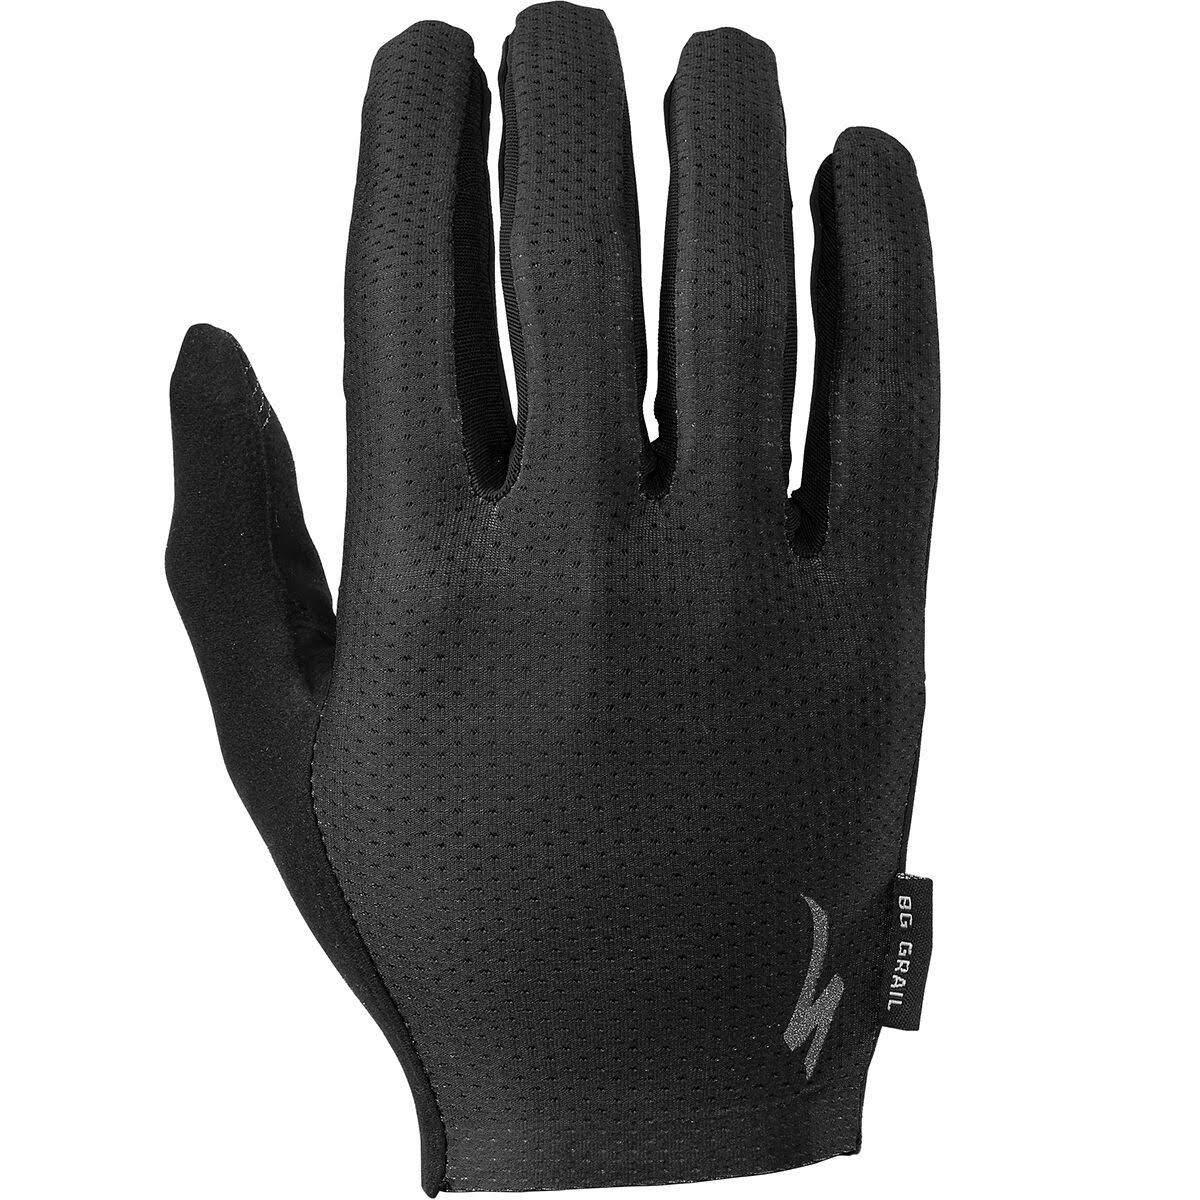 Specialized Body Geometry Grail Long Finger Glove Black, XL